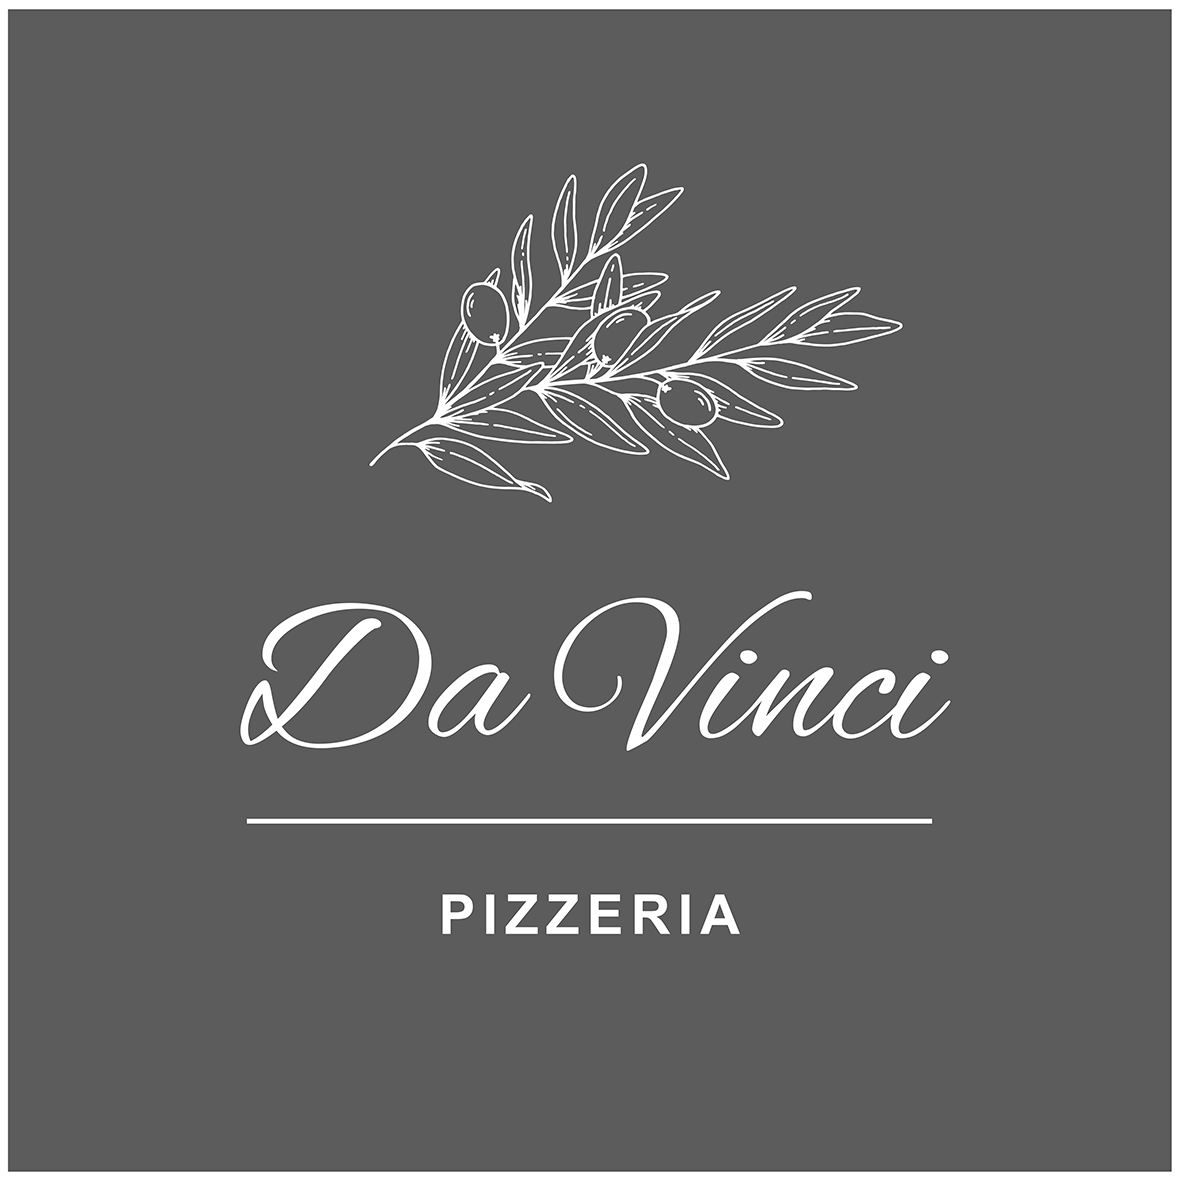 Da Vinci Logo 2 kl